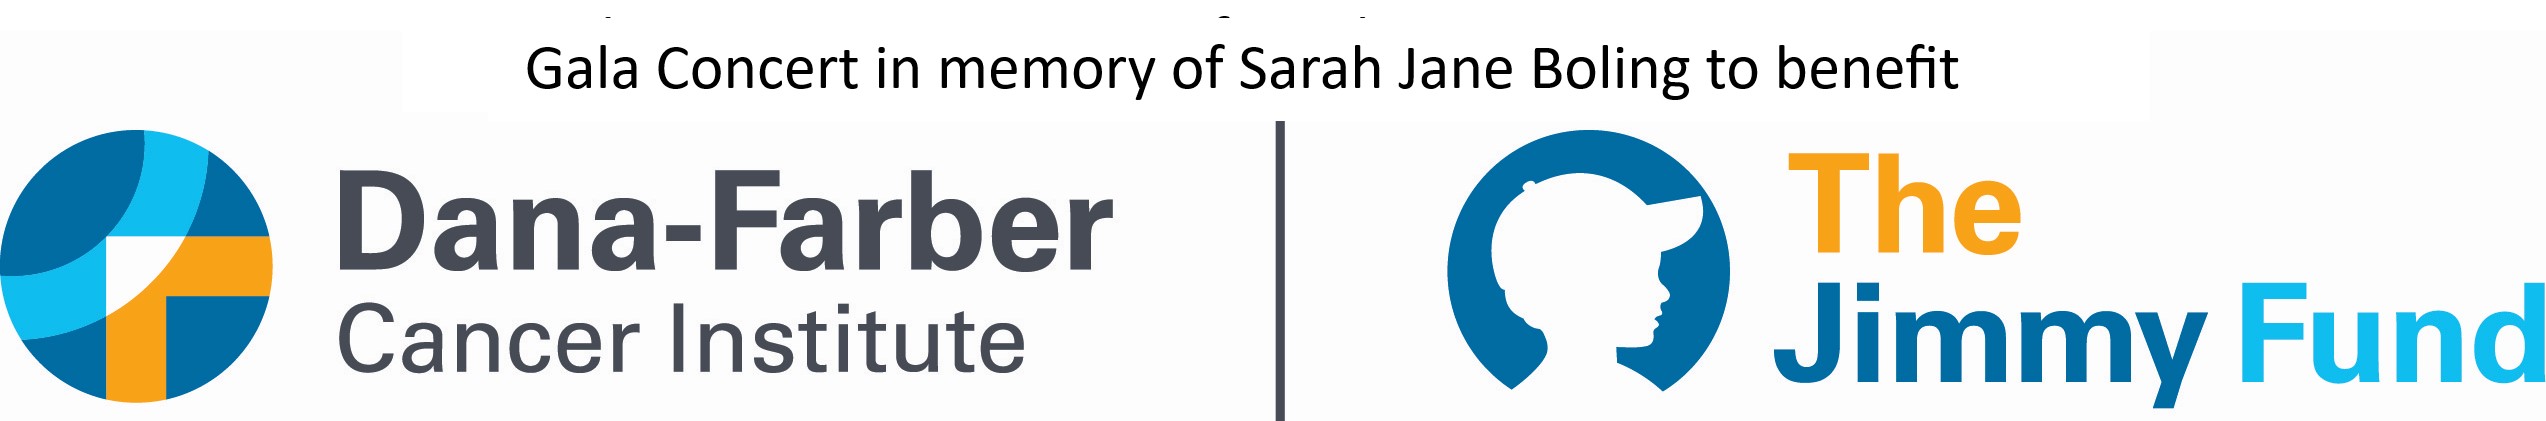 2023 Benefit Concert in memory of Sarah Jane Boling